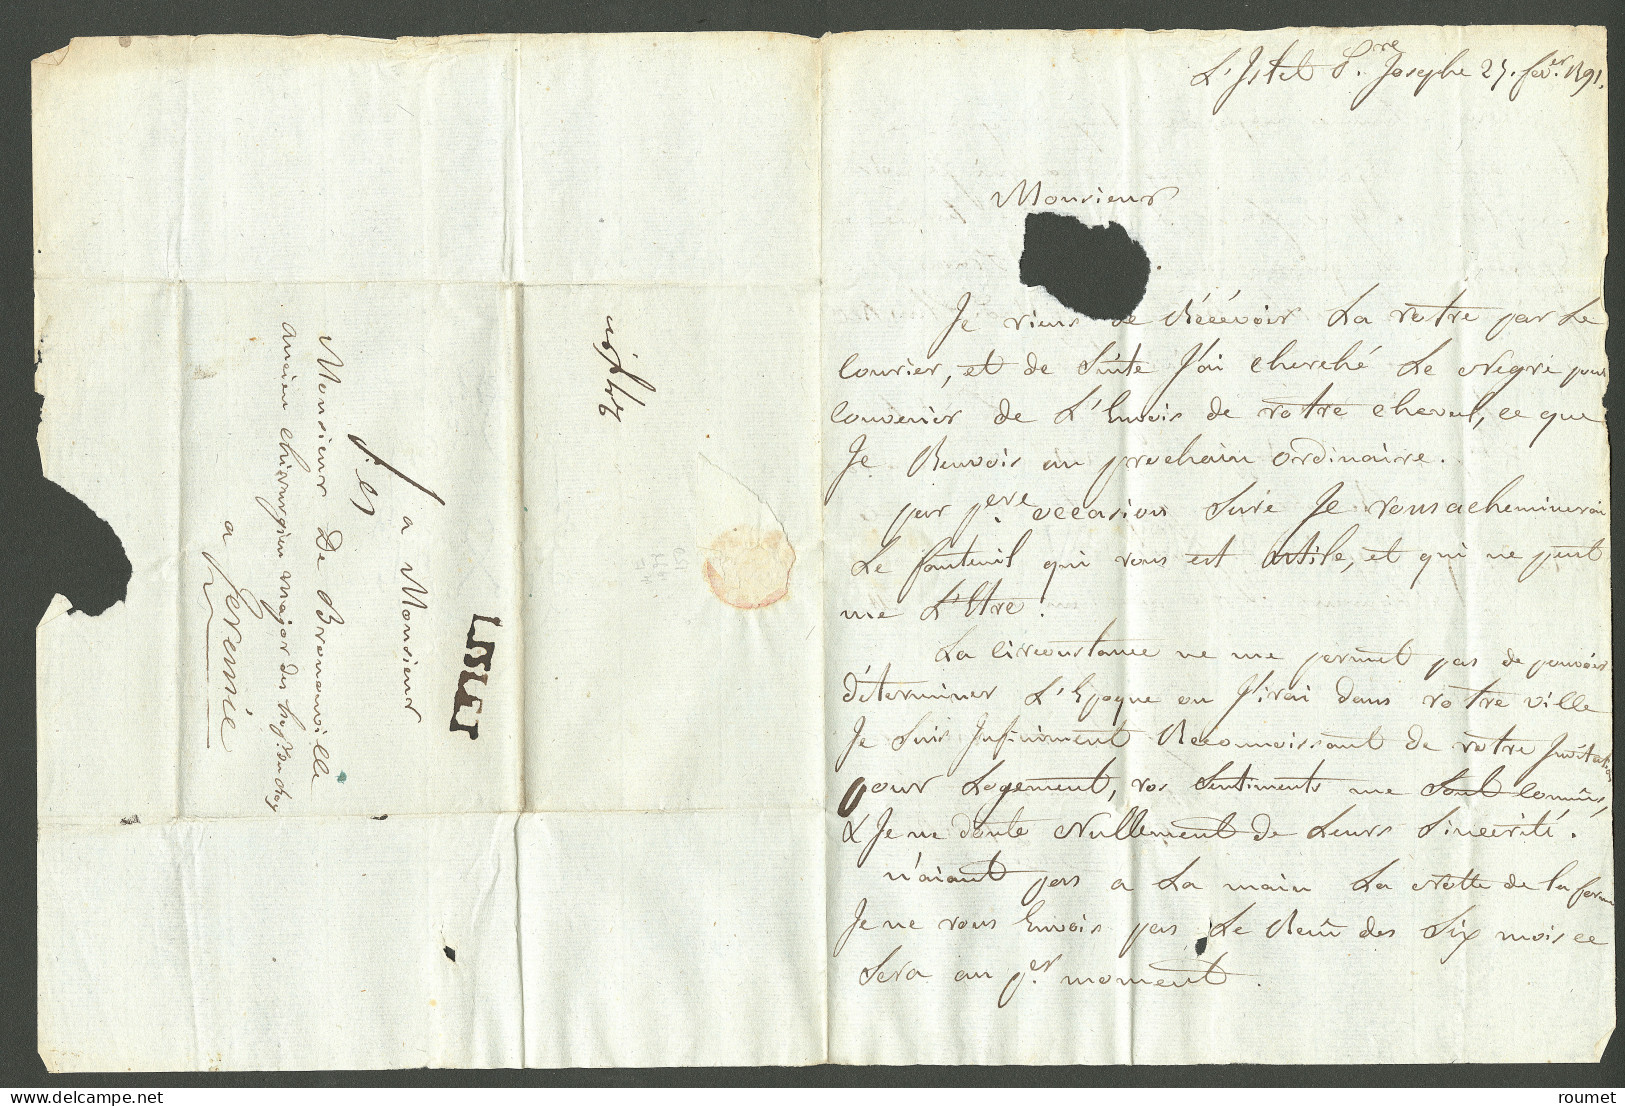 Lettre L'islet (Jamet N°2). Lettre Avec Texte Daté L'Islet St Joseph Le 25 Février 1791, Pour Jérémie. - TB. - R - Haiti